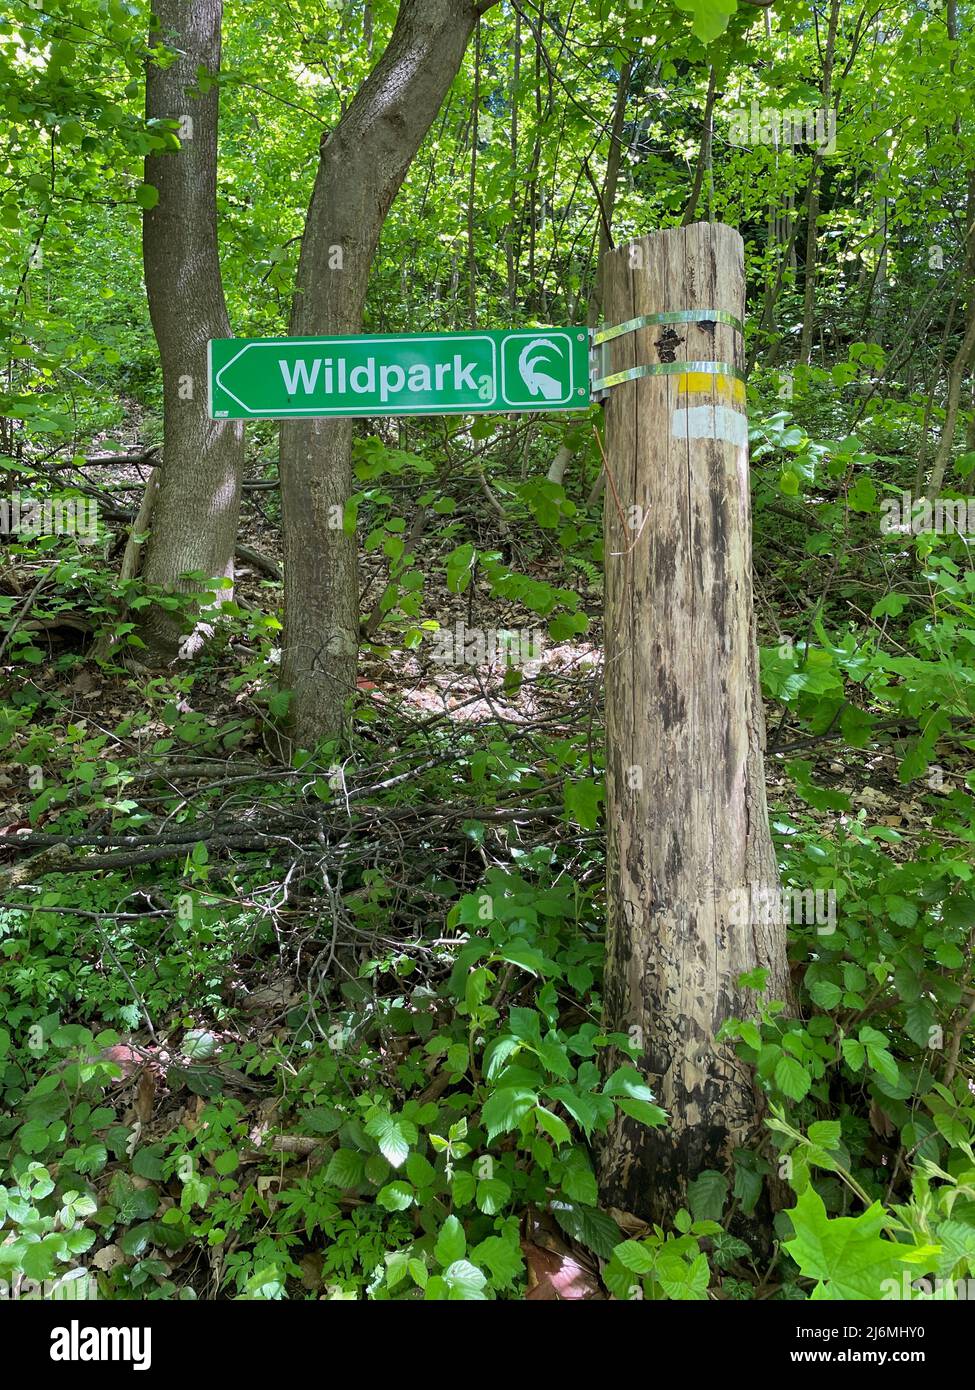 Accedi alla foresta indicando la strada per il parco degli animali, Wildpark. Feldkirch, Vorarlberg, Austria. Foto di alta qualità Foto Stock